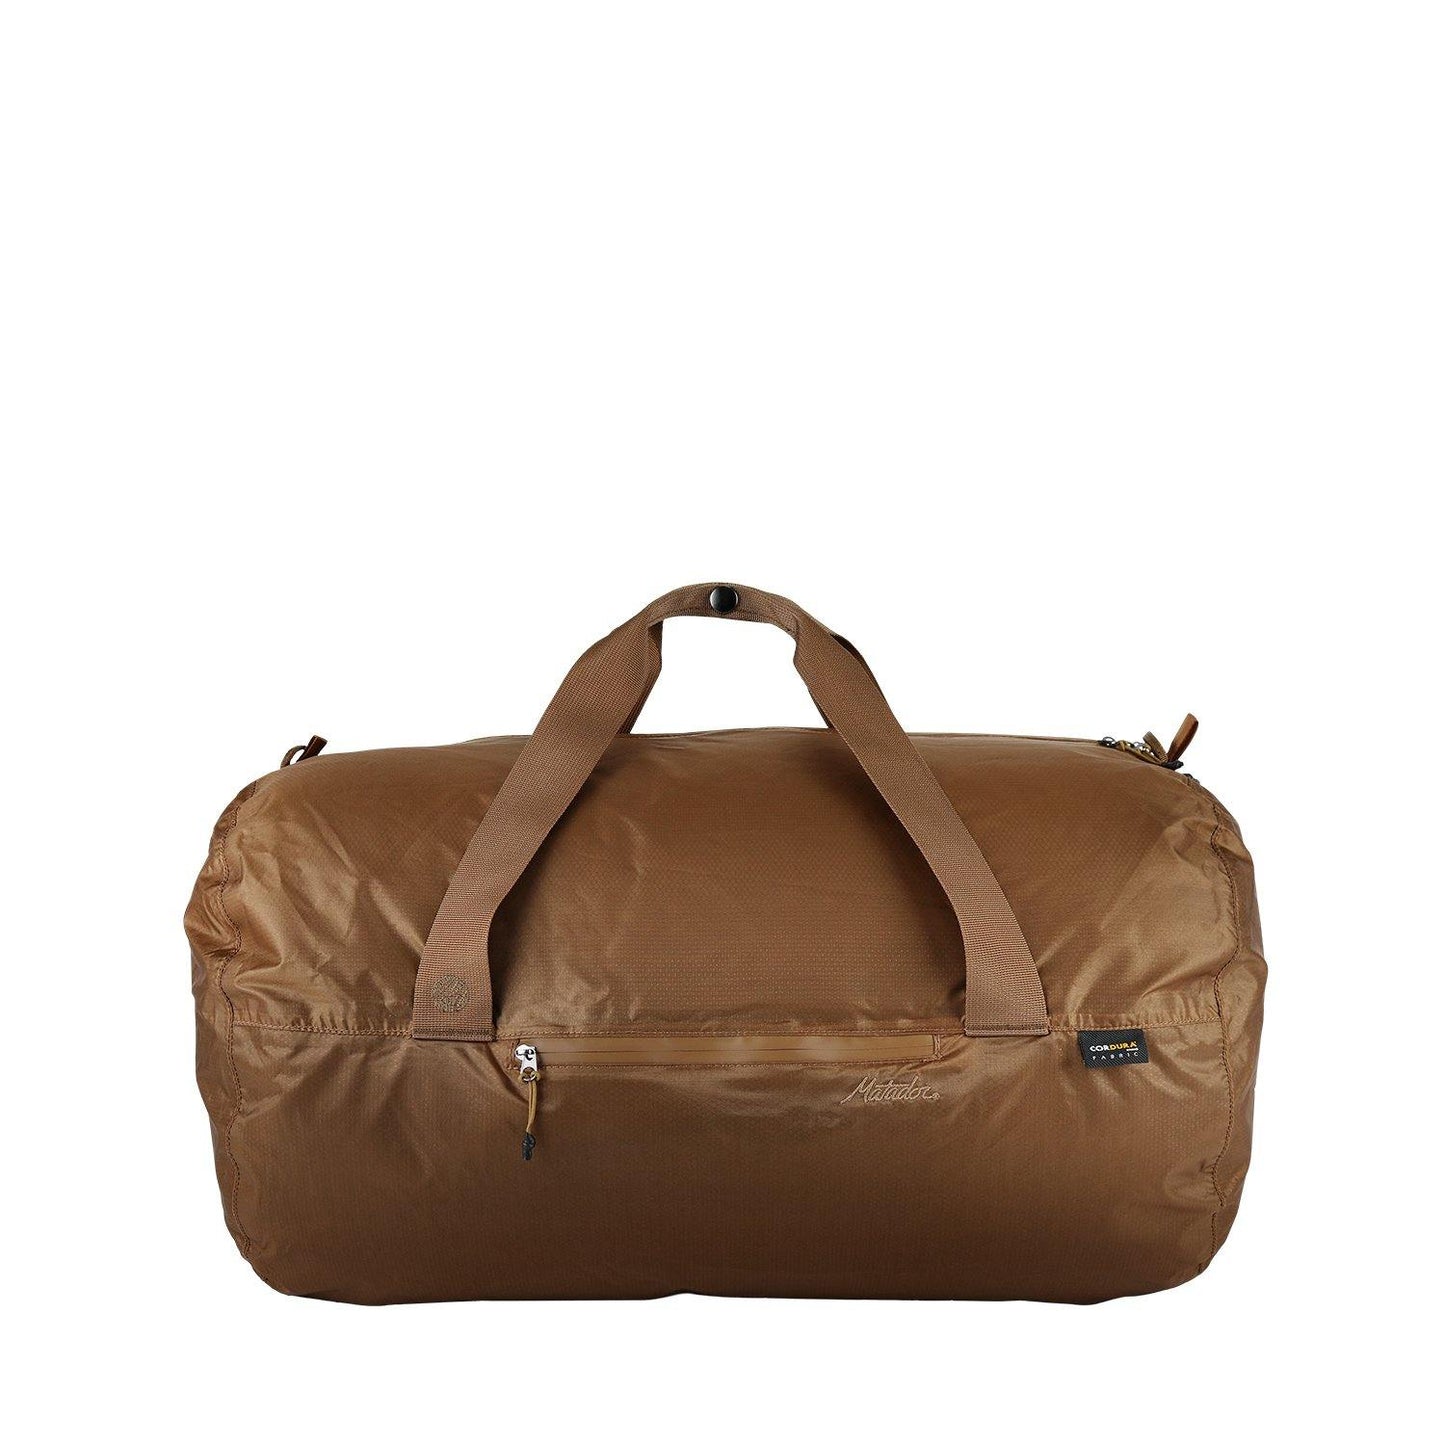 waterproof brown packable duffle bag